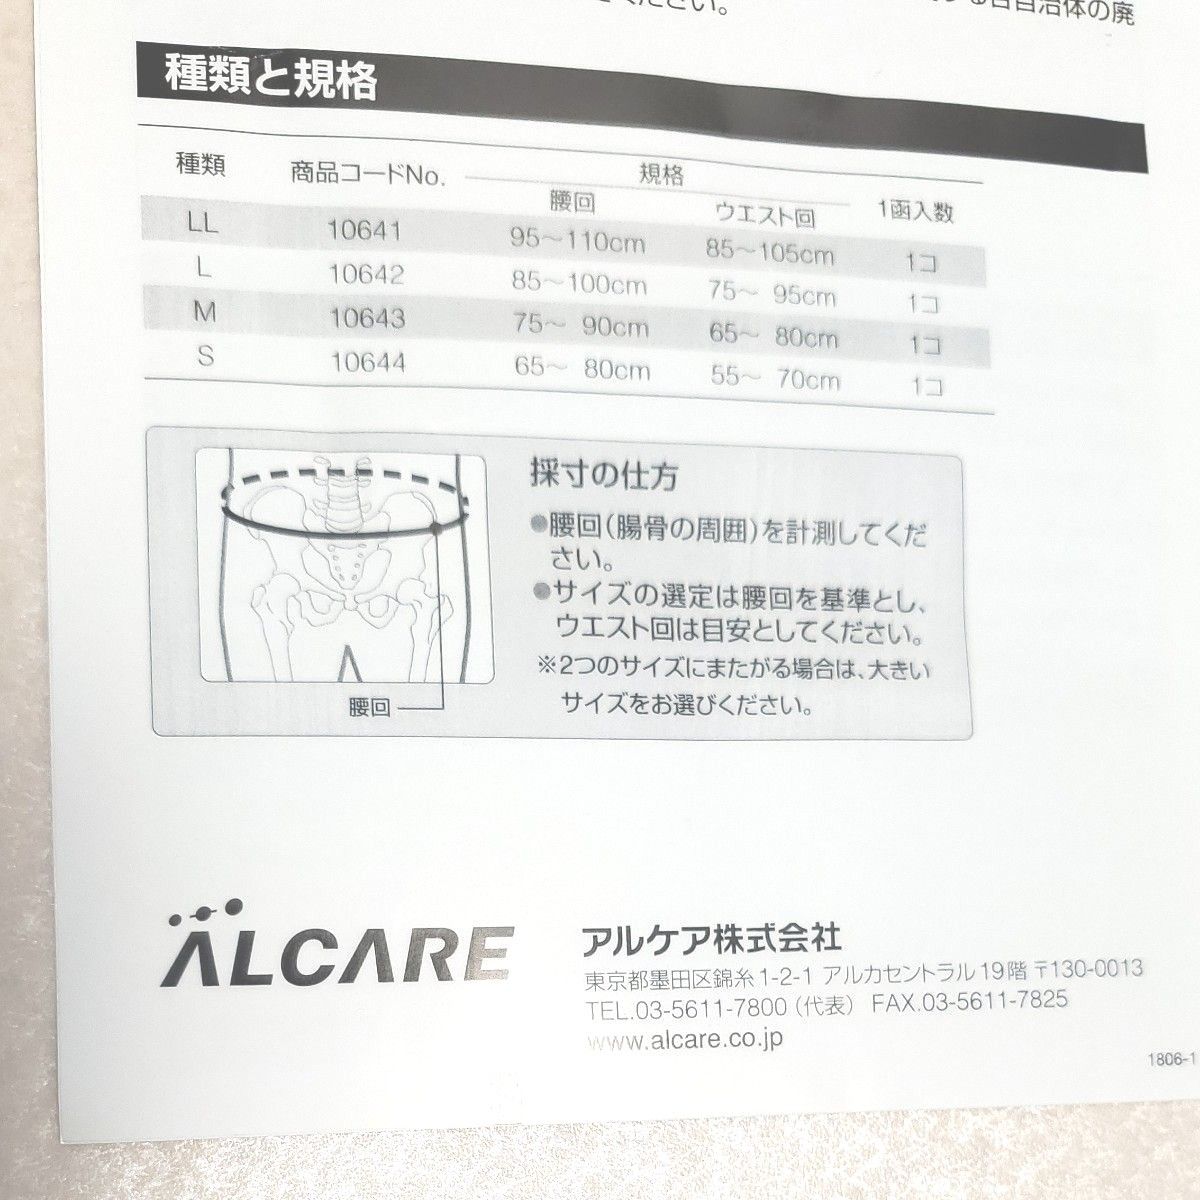 腰痛 ベルトアルケア サクロデラックス M ホワイト Sacro DX 補助ベルト付腰部固定帯 ランバーサポート10643 